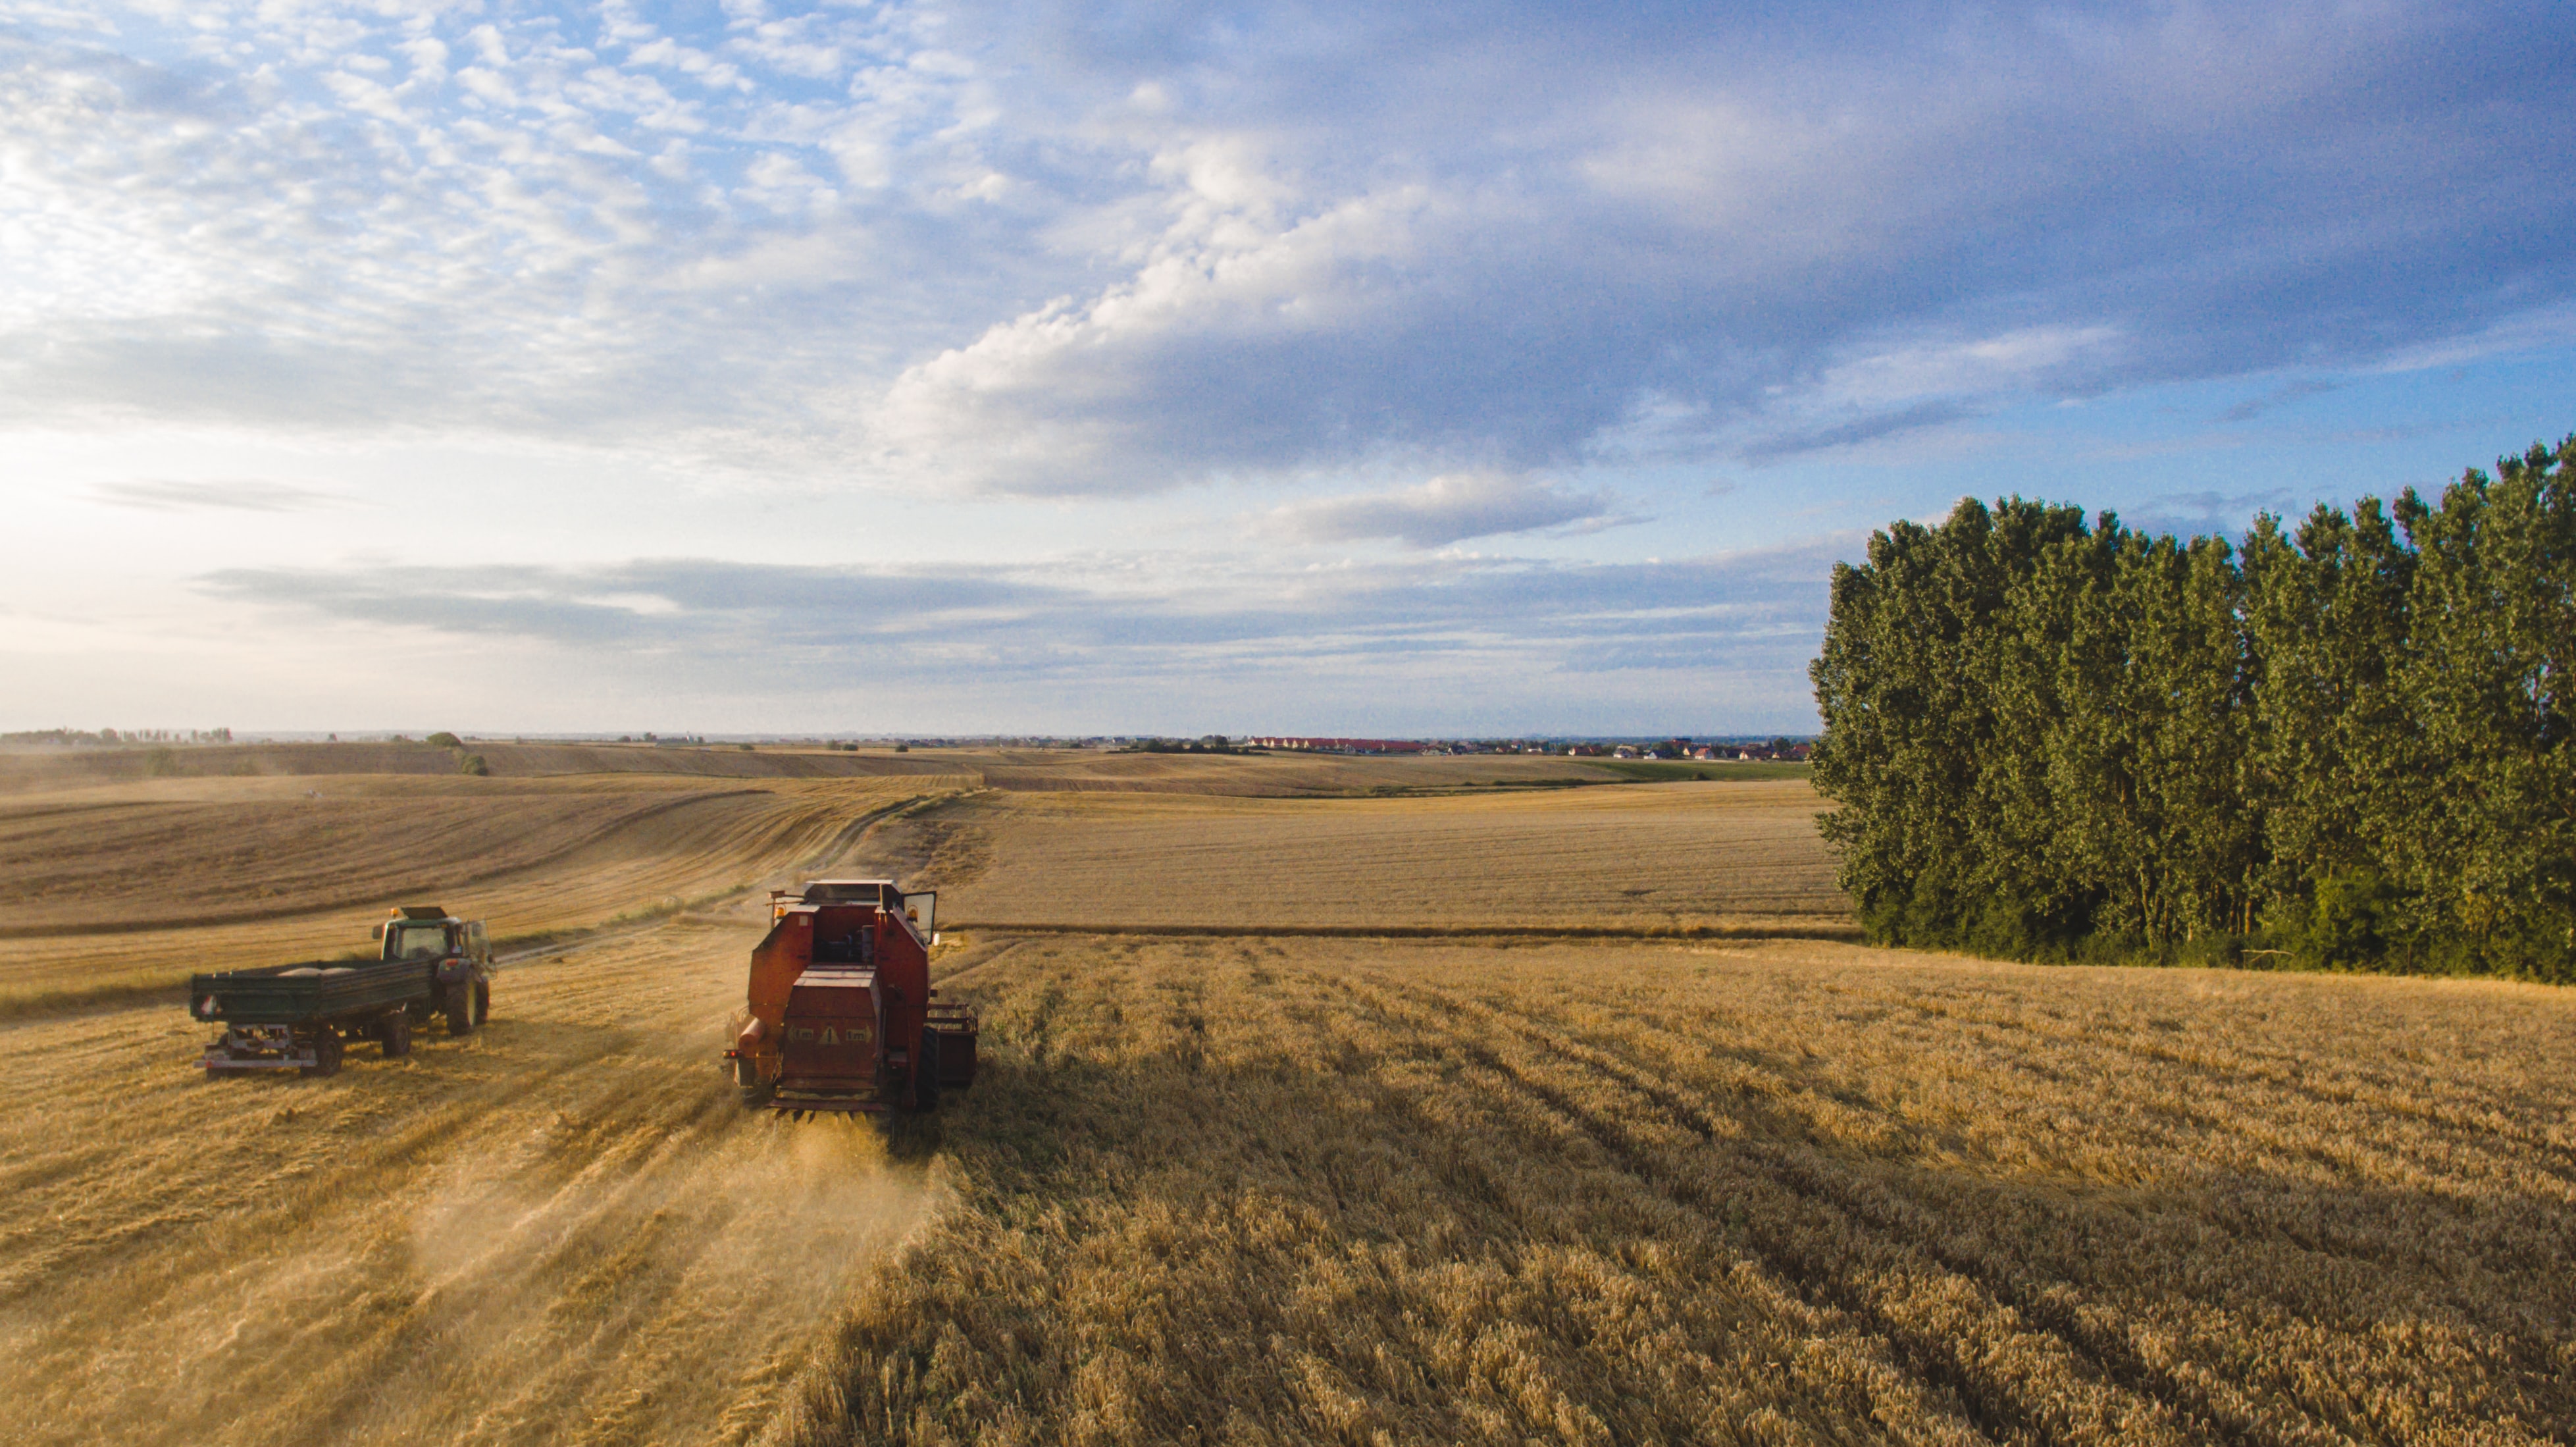 Two tractors in a grain field